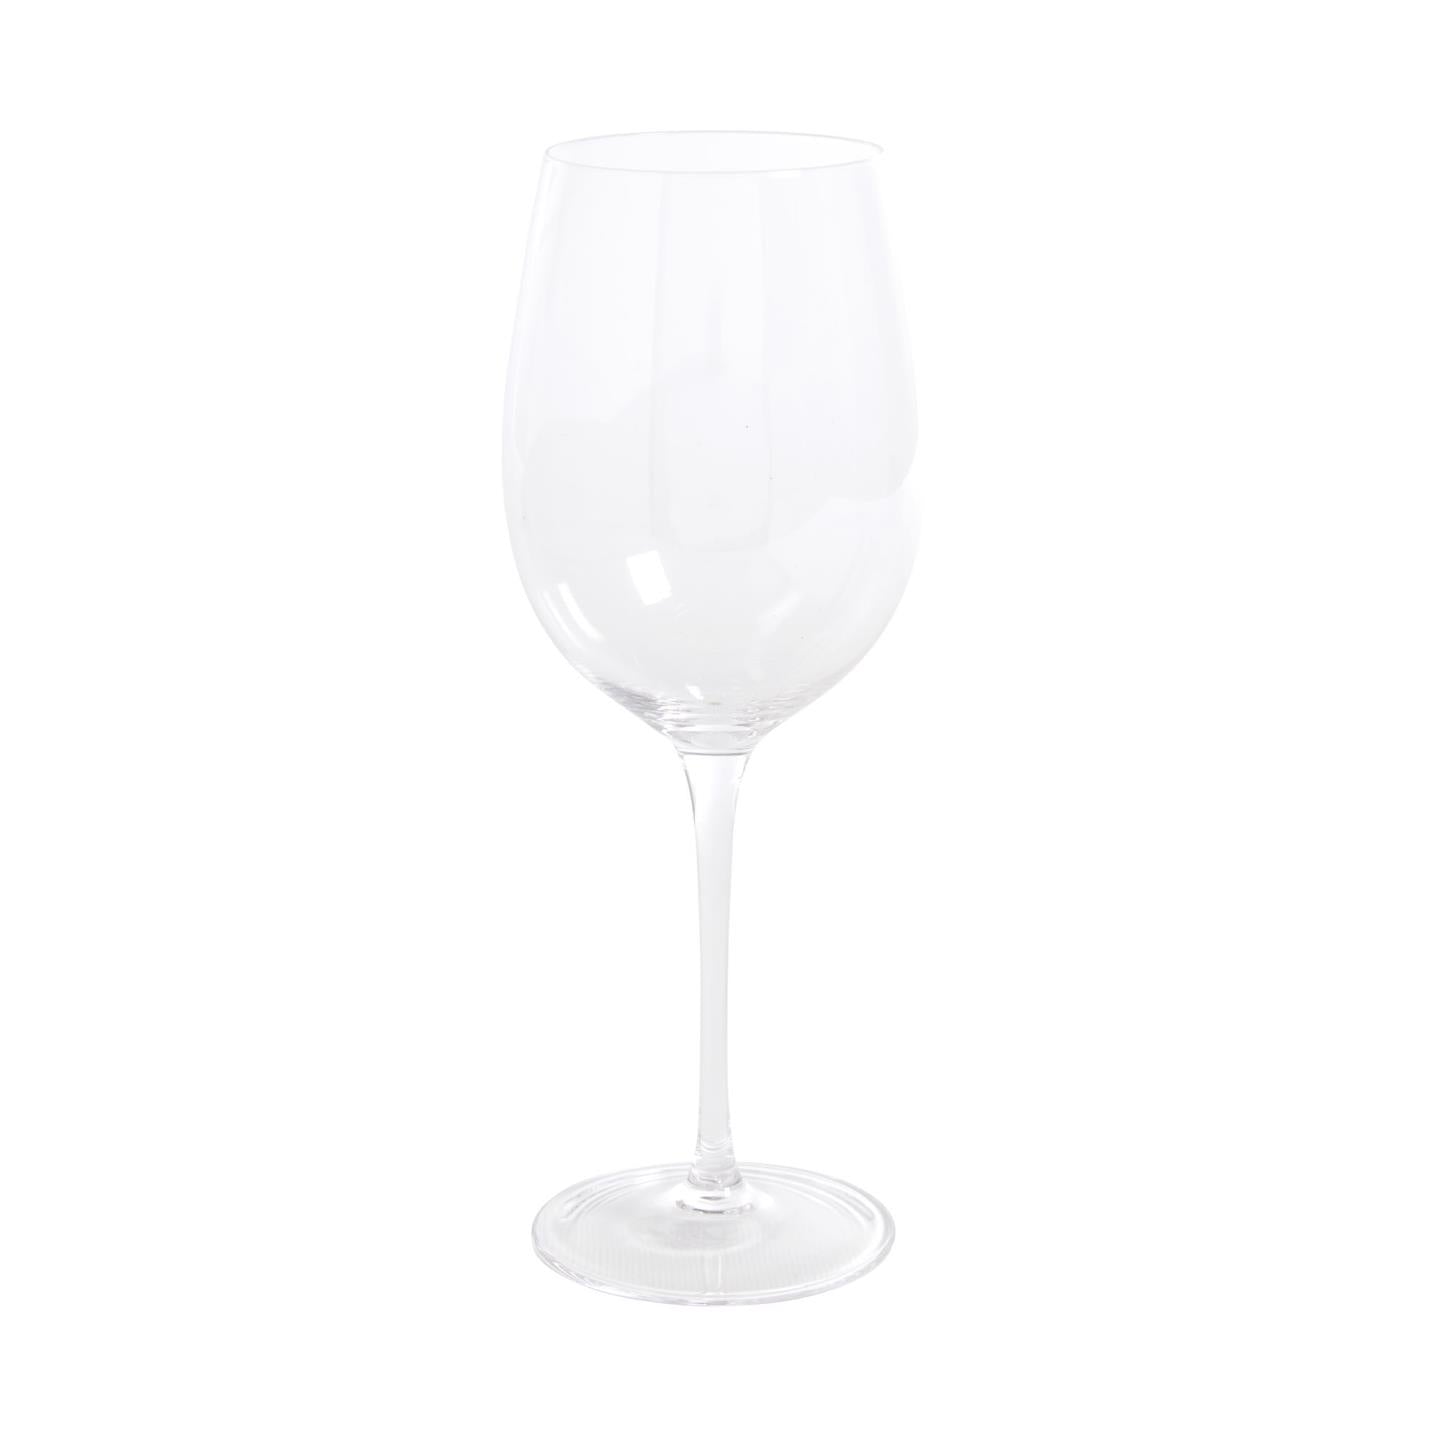 Marien large transparent wine glass 50 cl